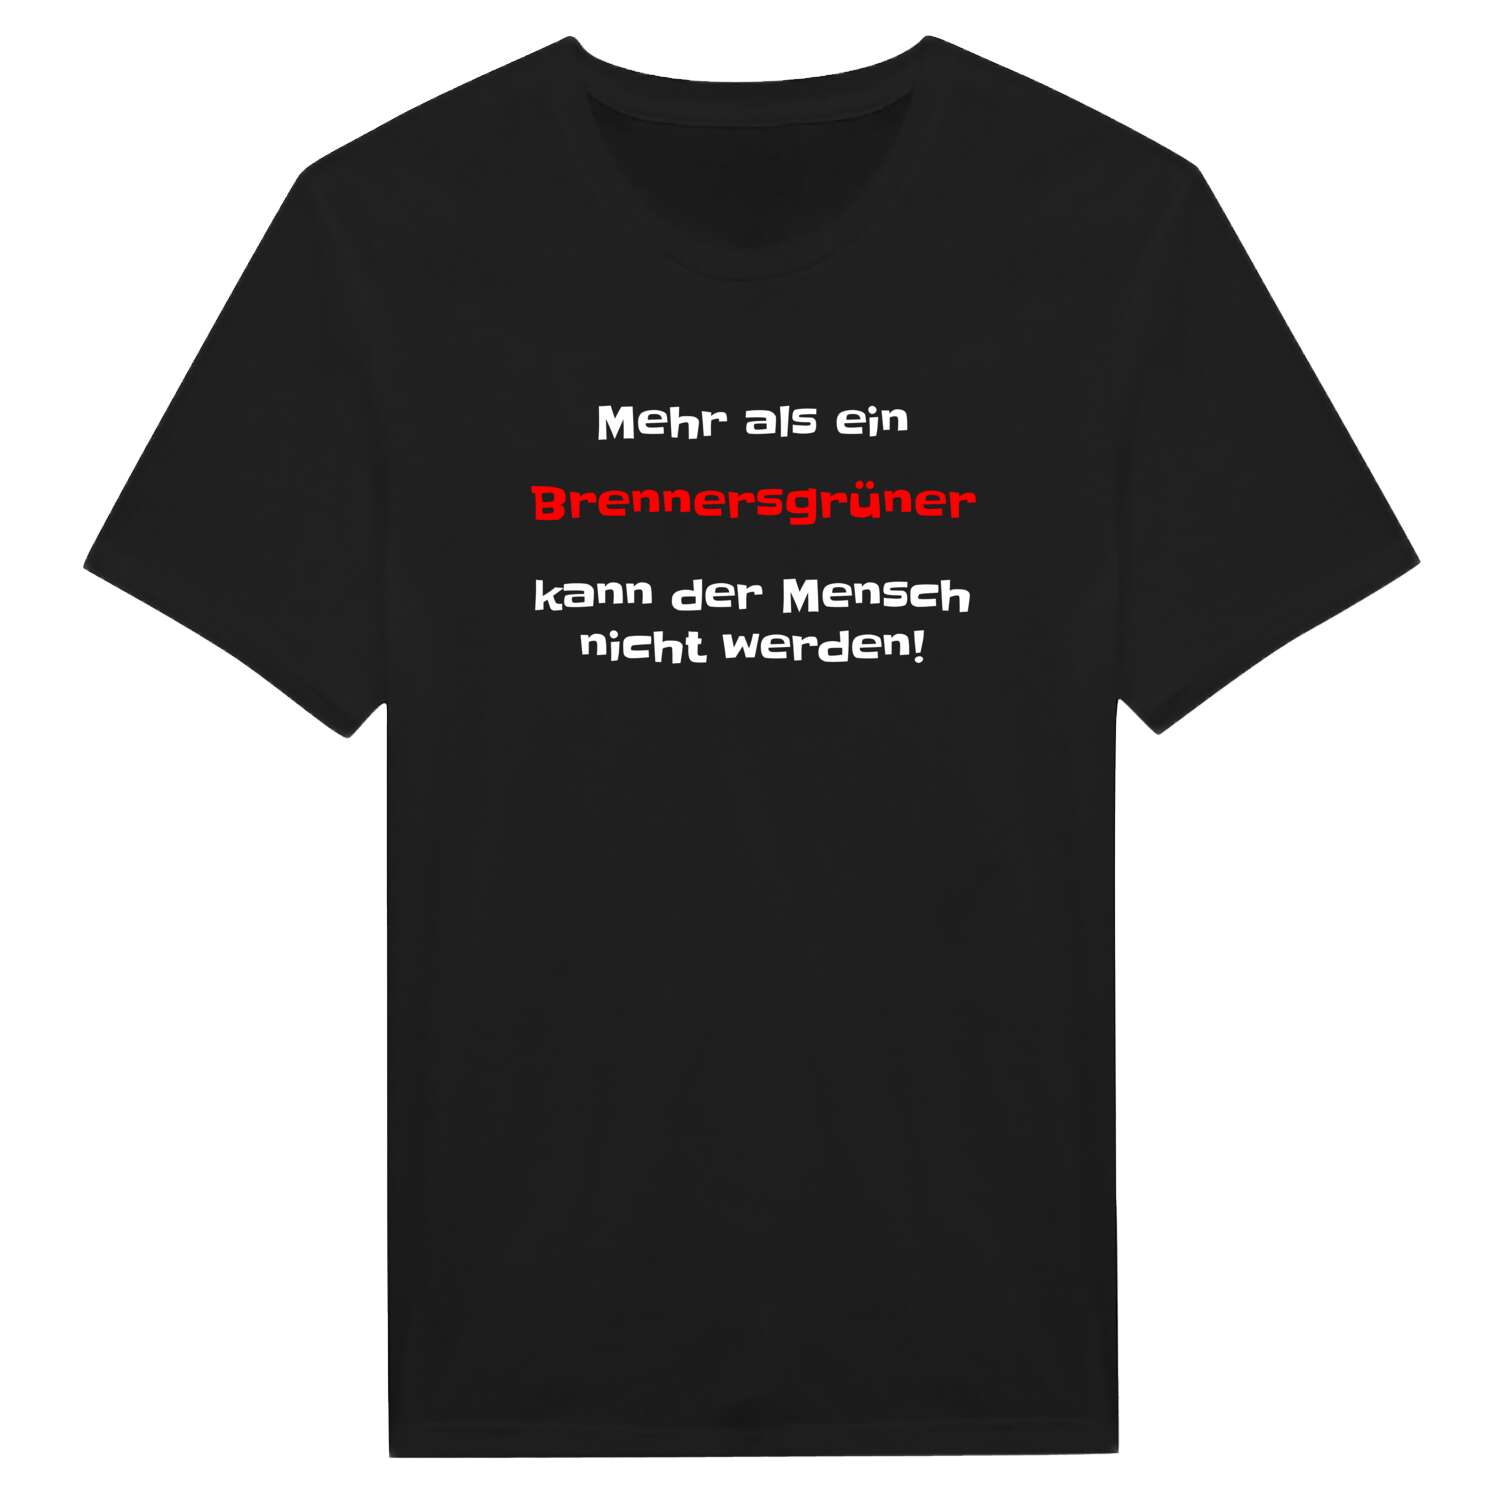 Brennersgrün T-Shirt »Mehr als ein«